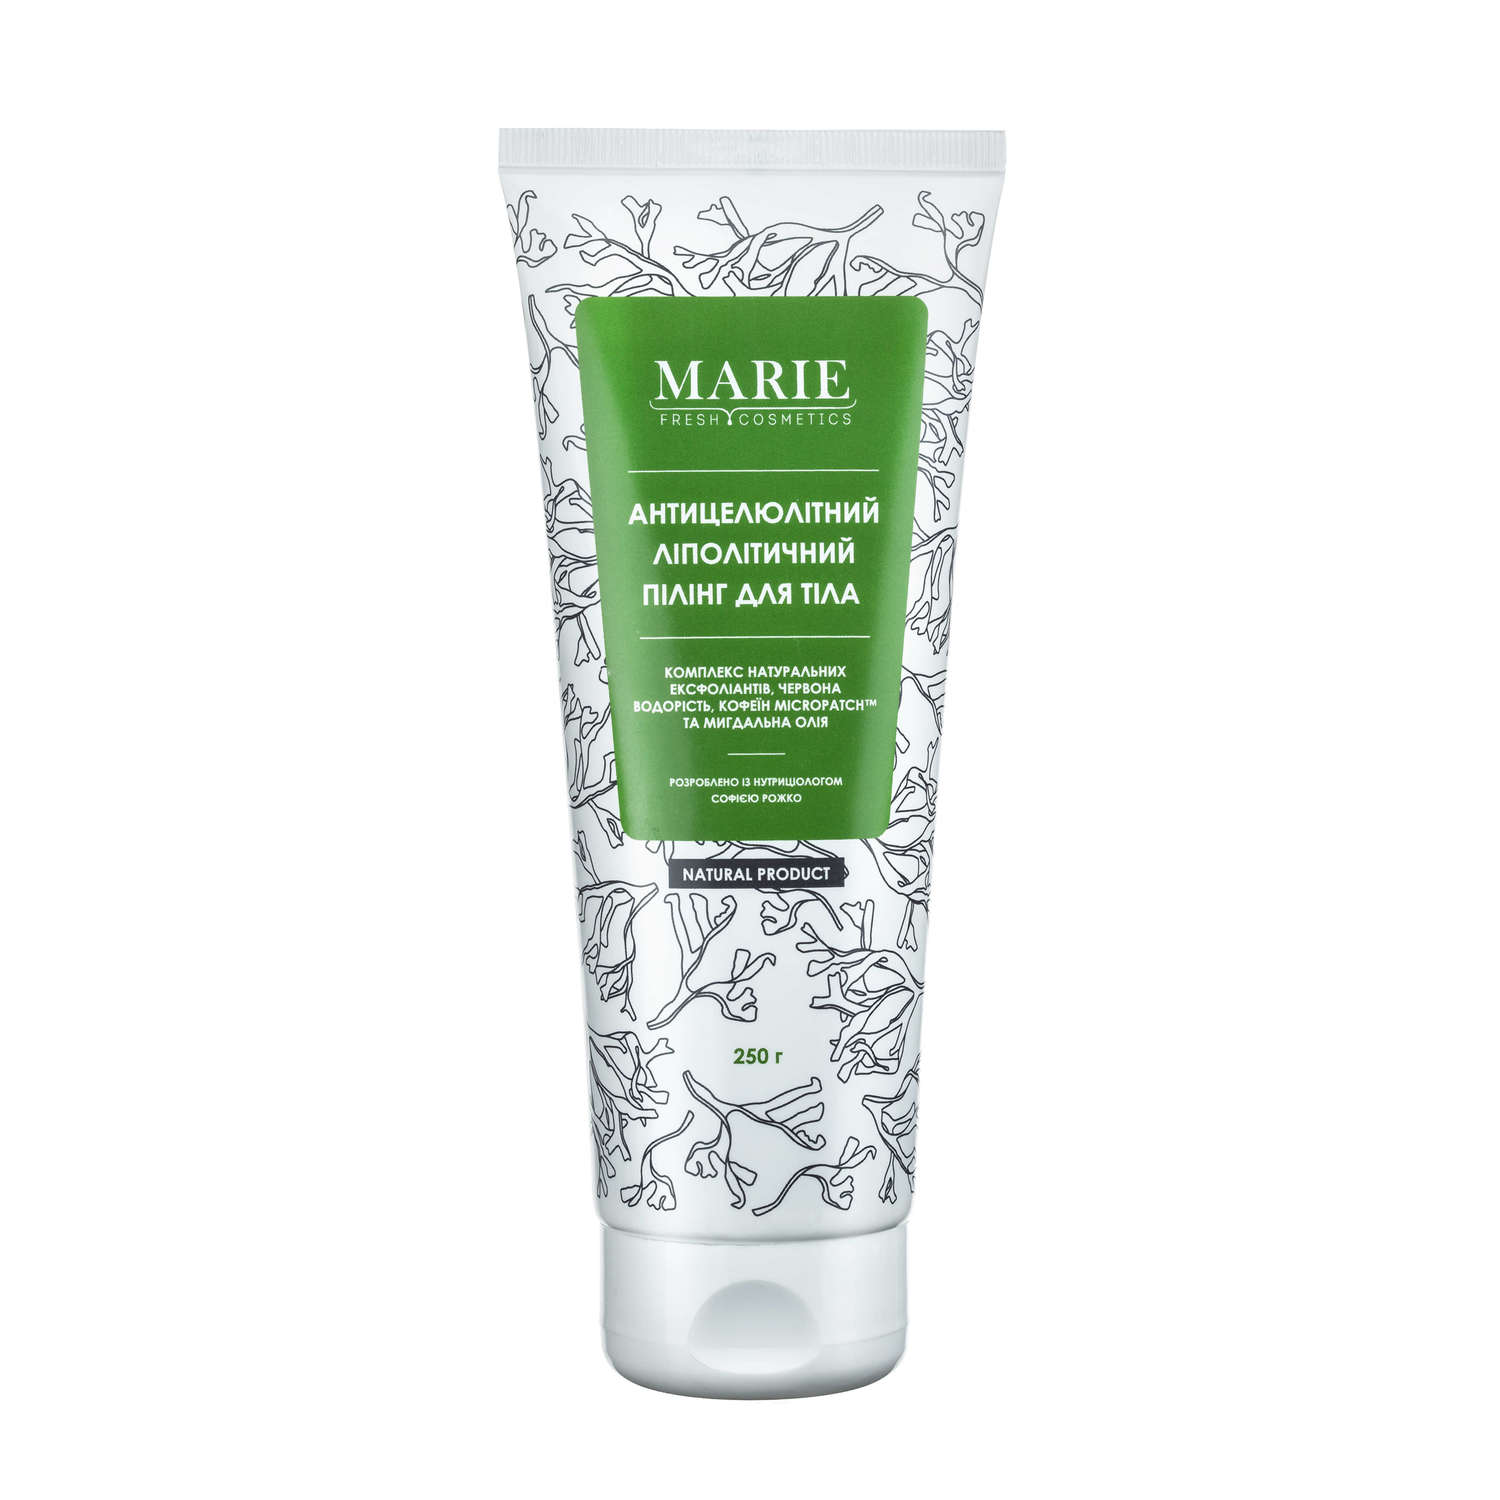 Marie Fresh Cosmetics, антицеллюлитный липолитический пилинг для тела